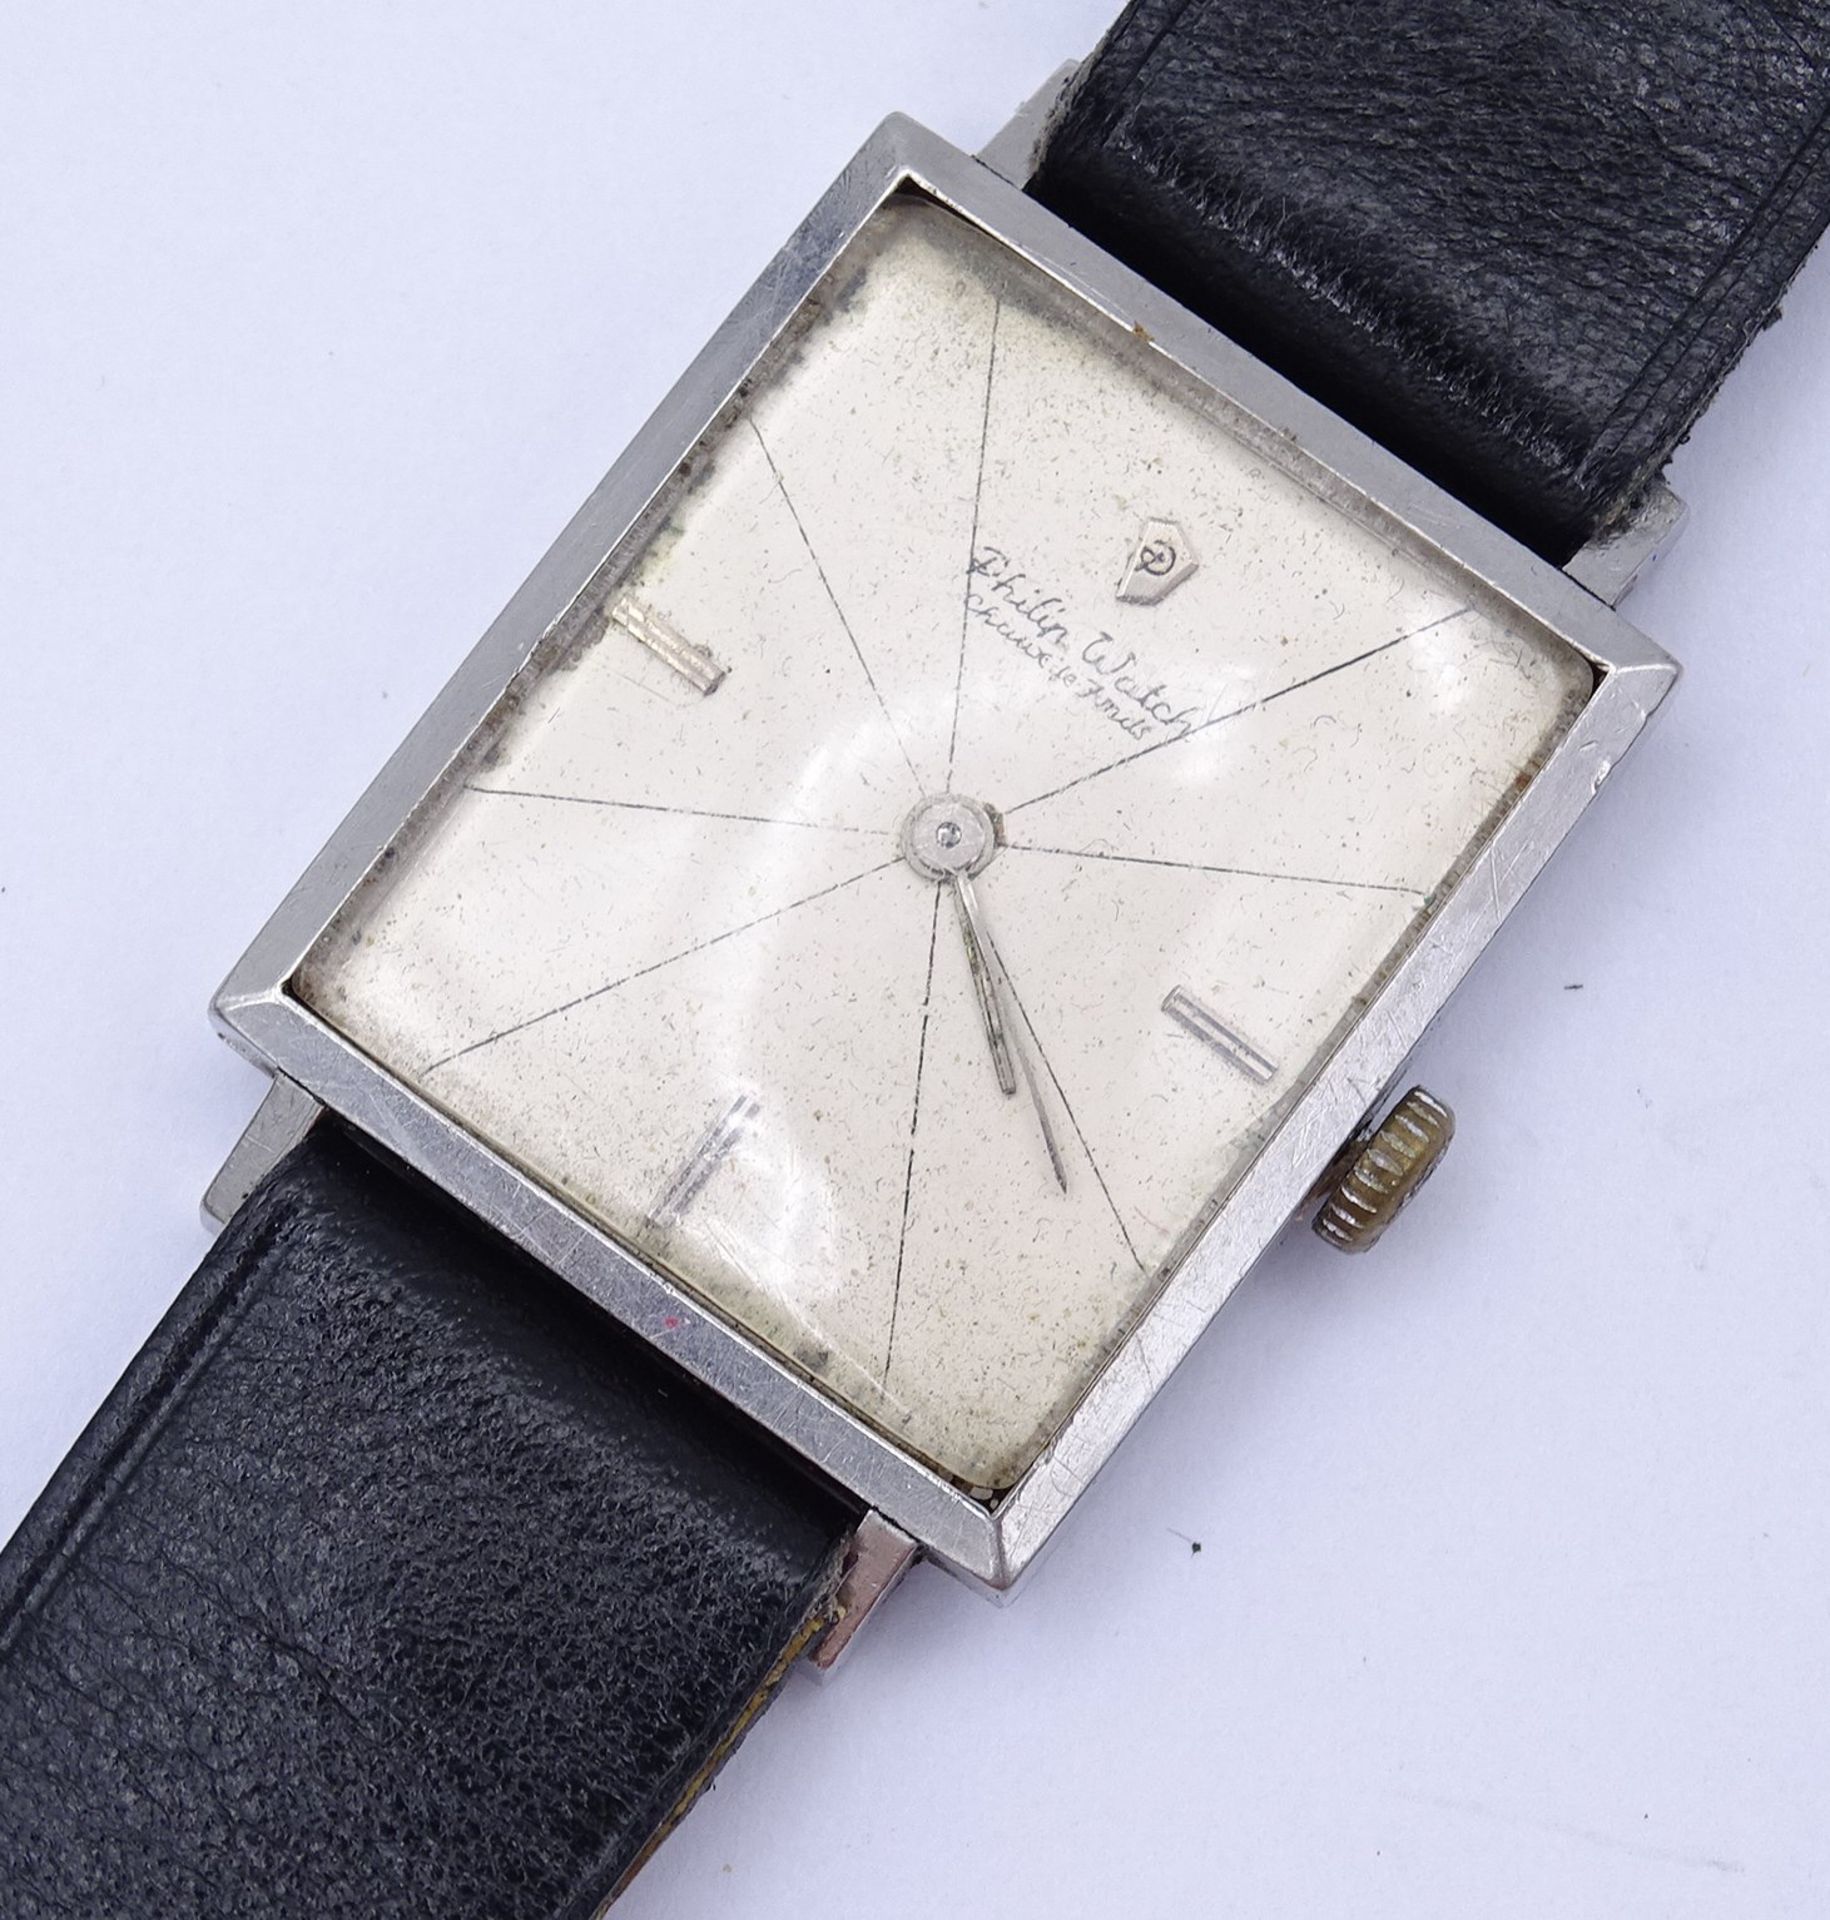 Herren Armbanduhr Philip Watch, mechanisch, Werk läuft, Gehäuse 25 x 30mm, Alters- und Gebrauchsspu - Image 2 of 4